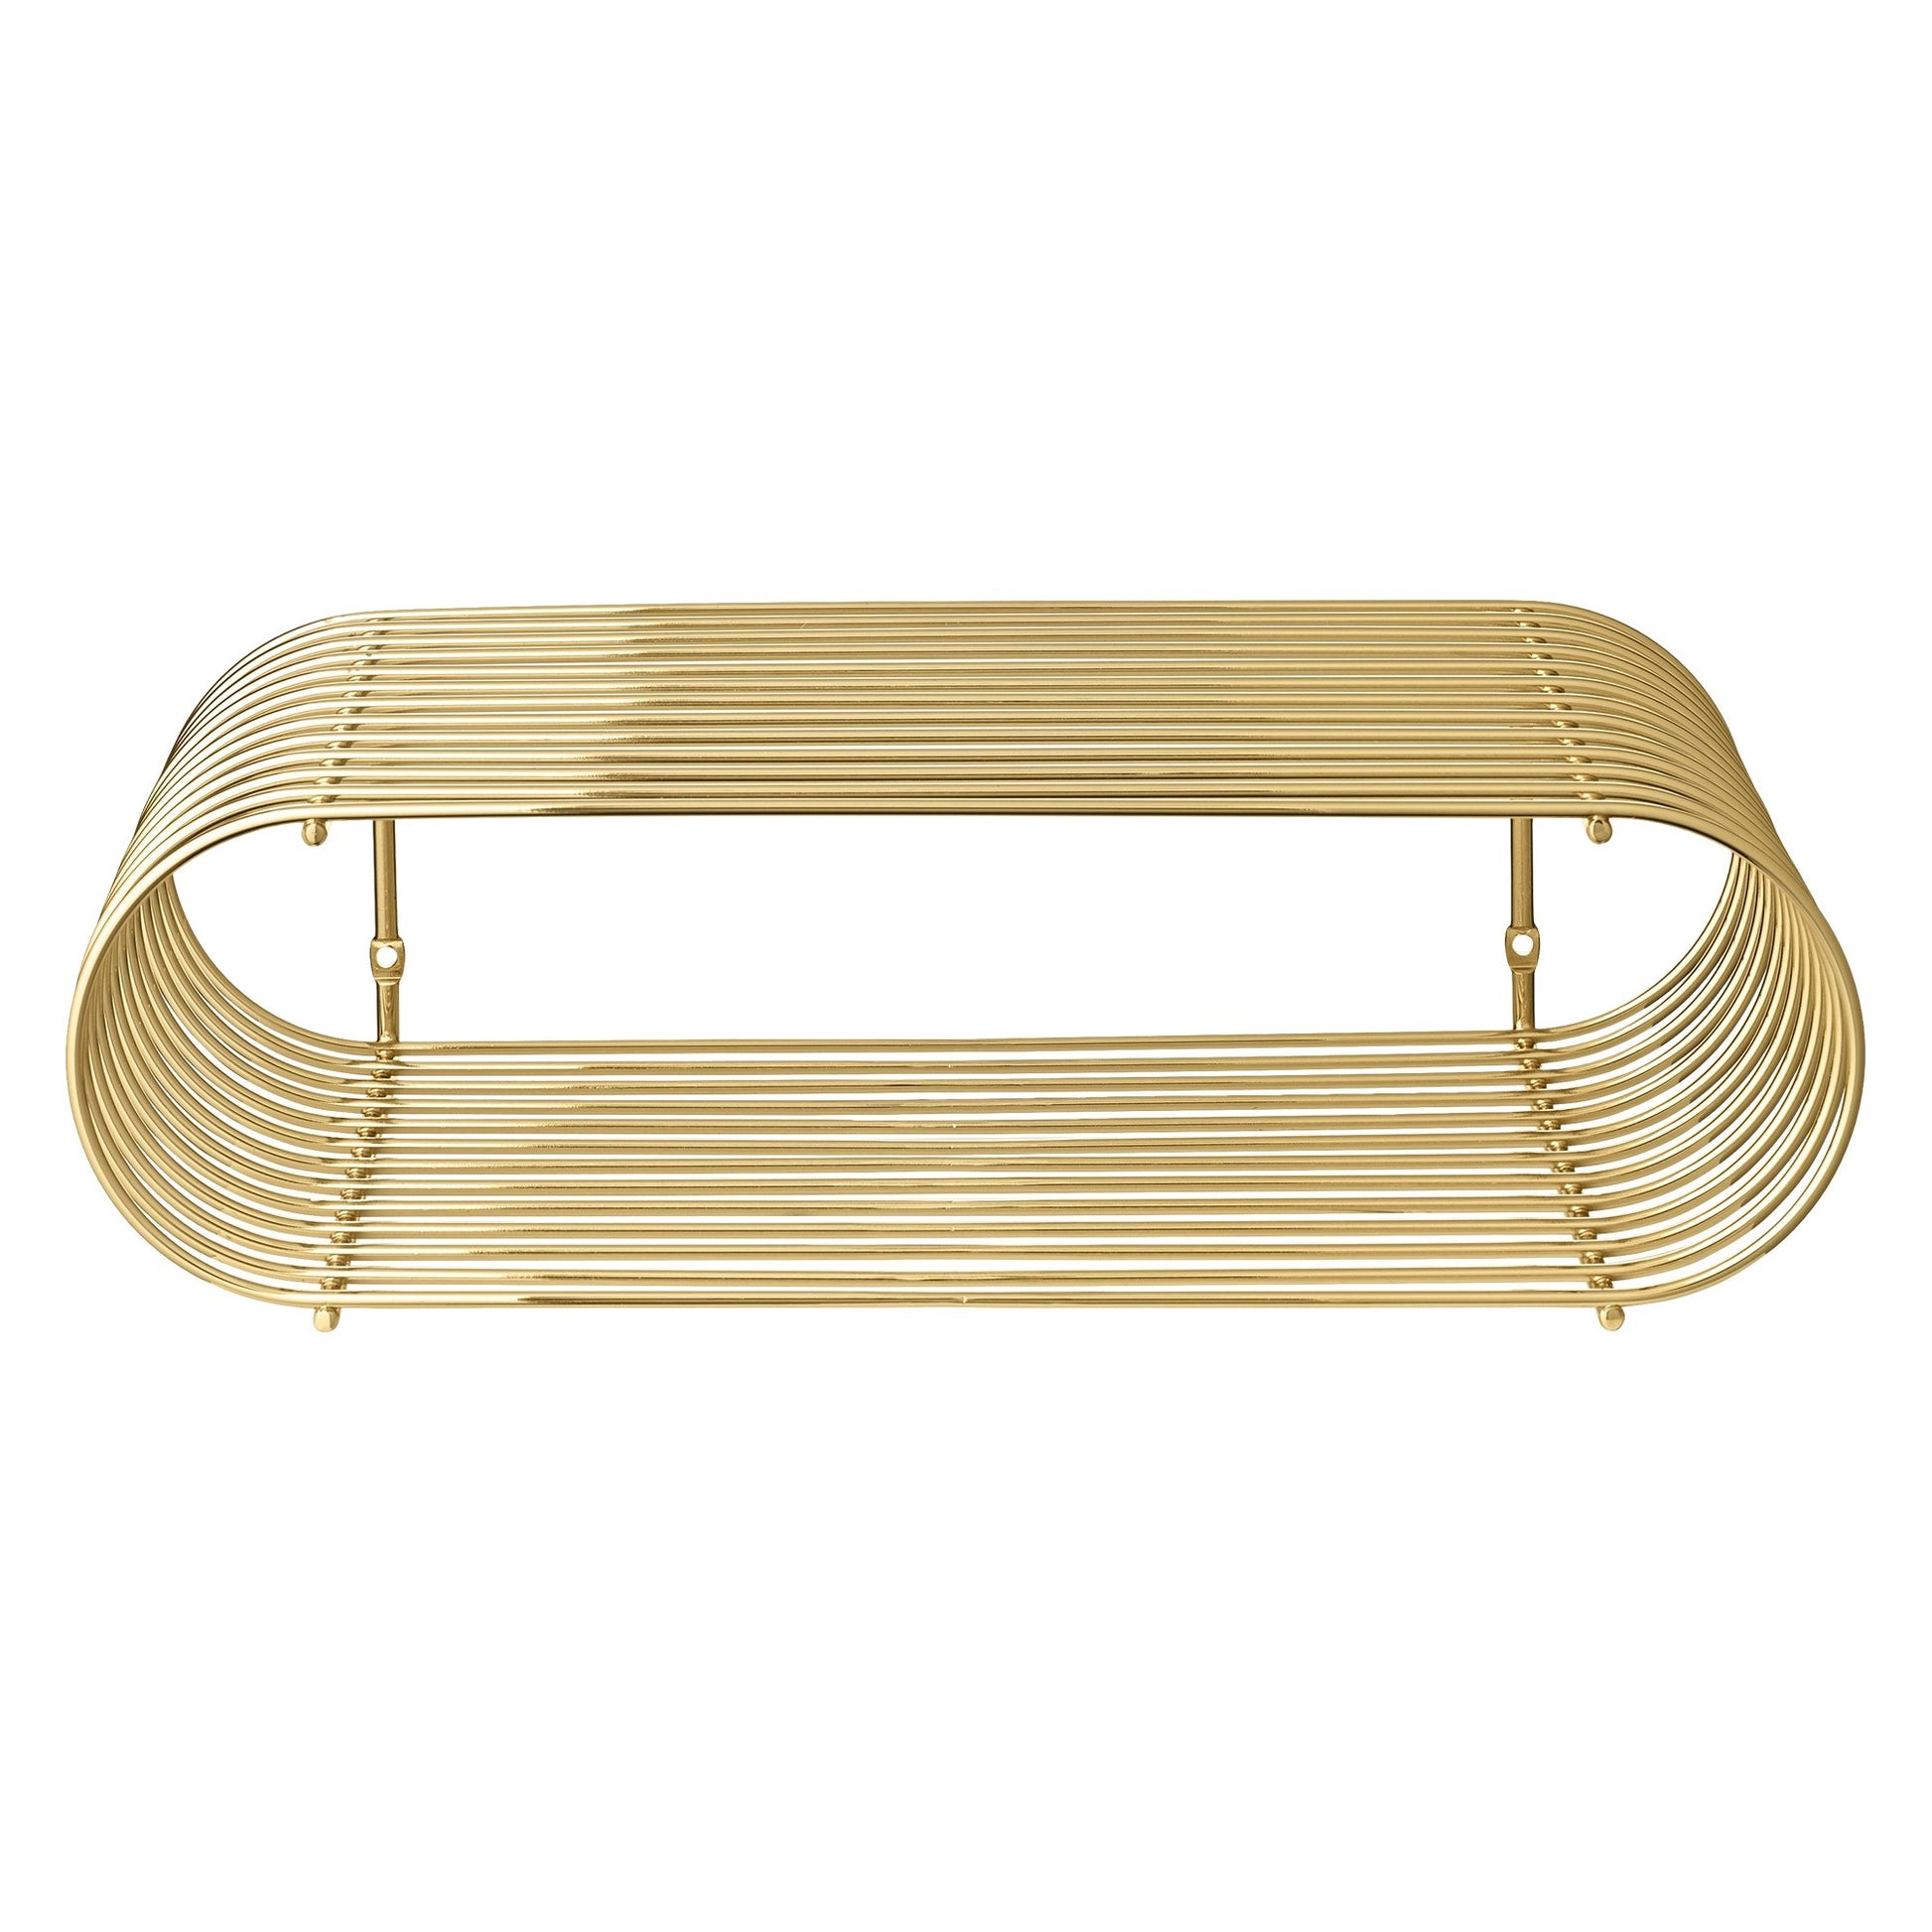 CURVA Shelf H12 cm by AYTM #Gold